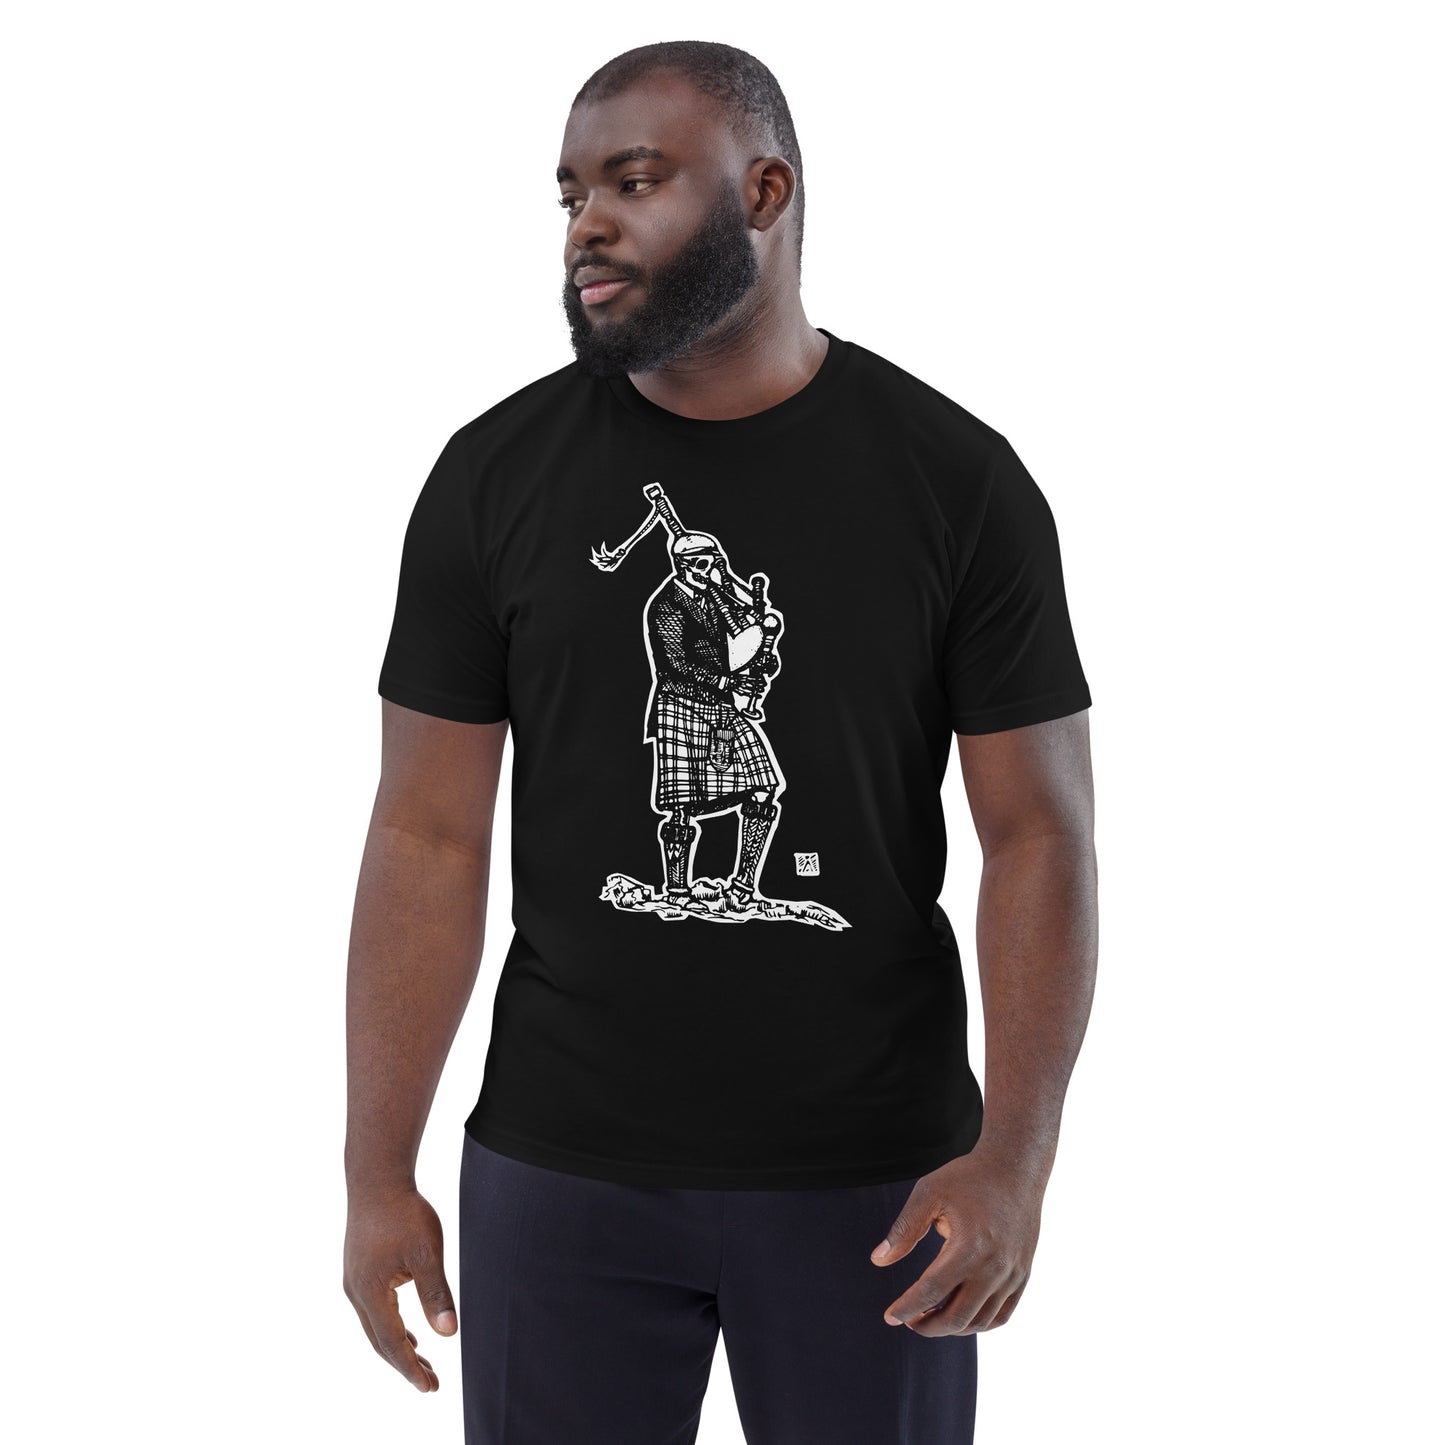 PIPE DREAM Black Unisex T-Shirt B/W Print